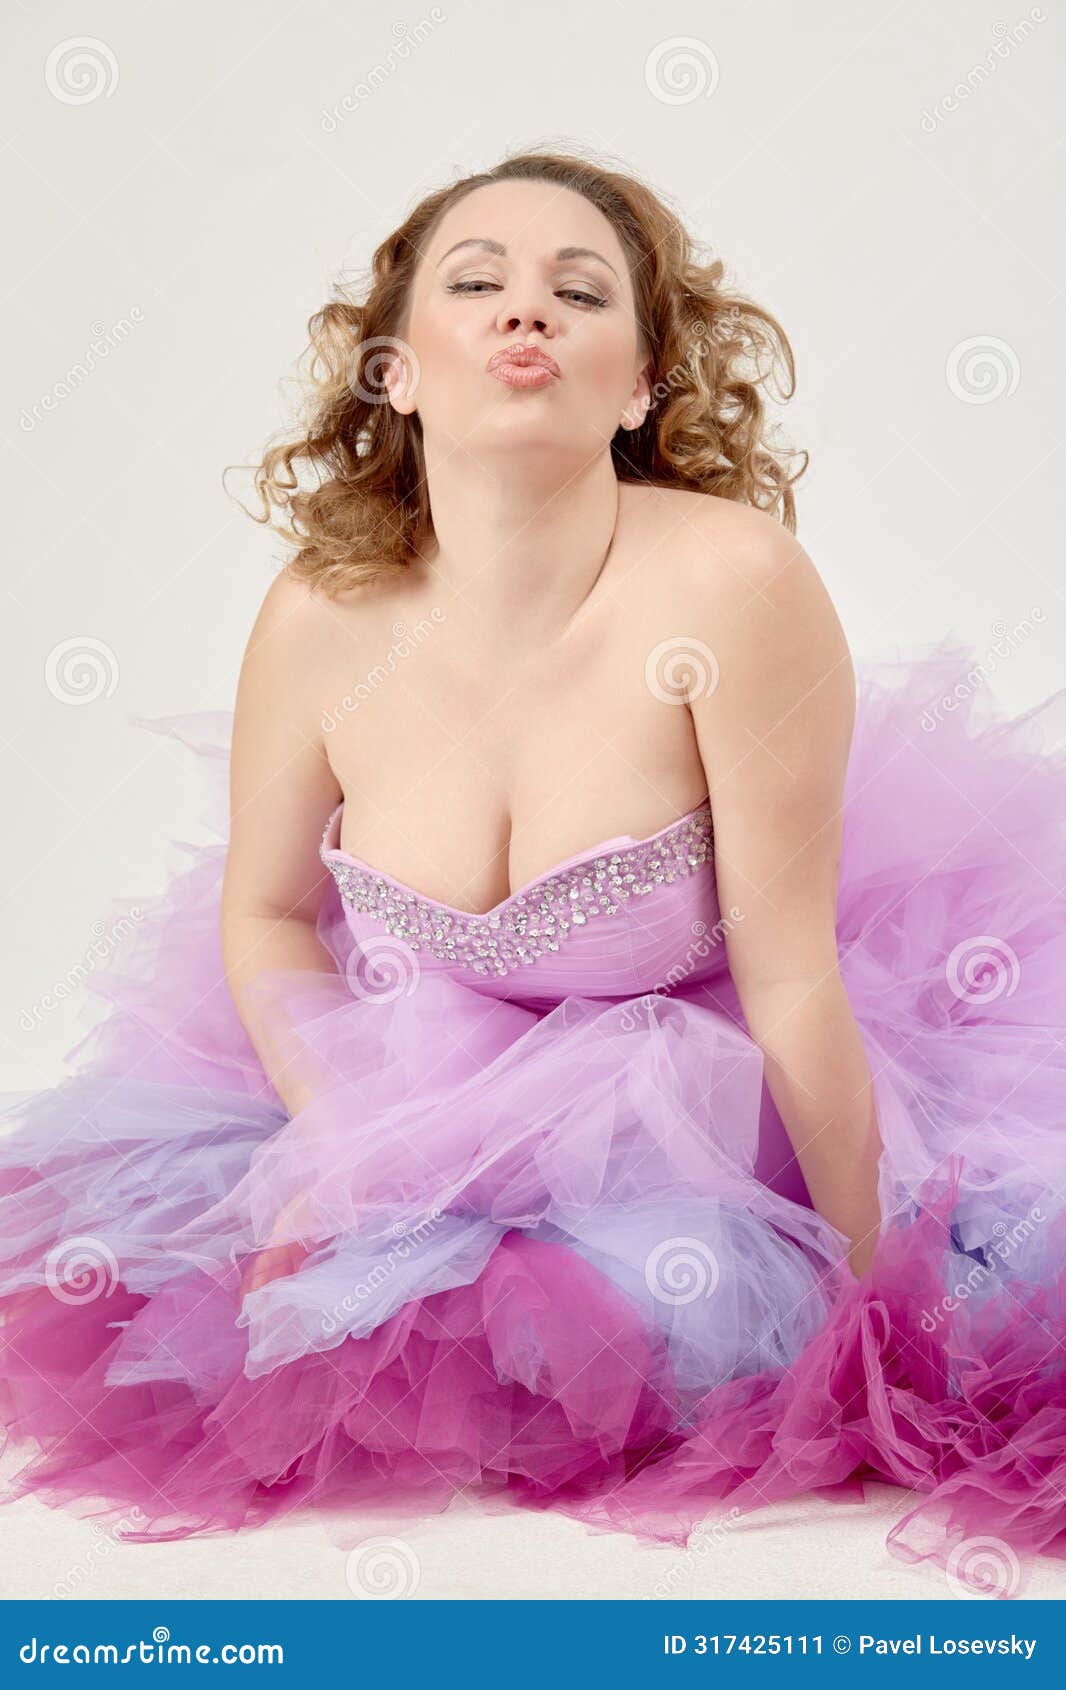 portrait of woman in a fluffy purple dress giving